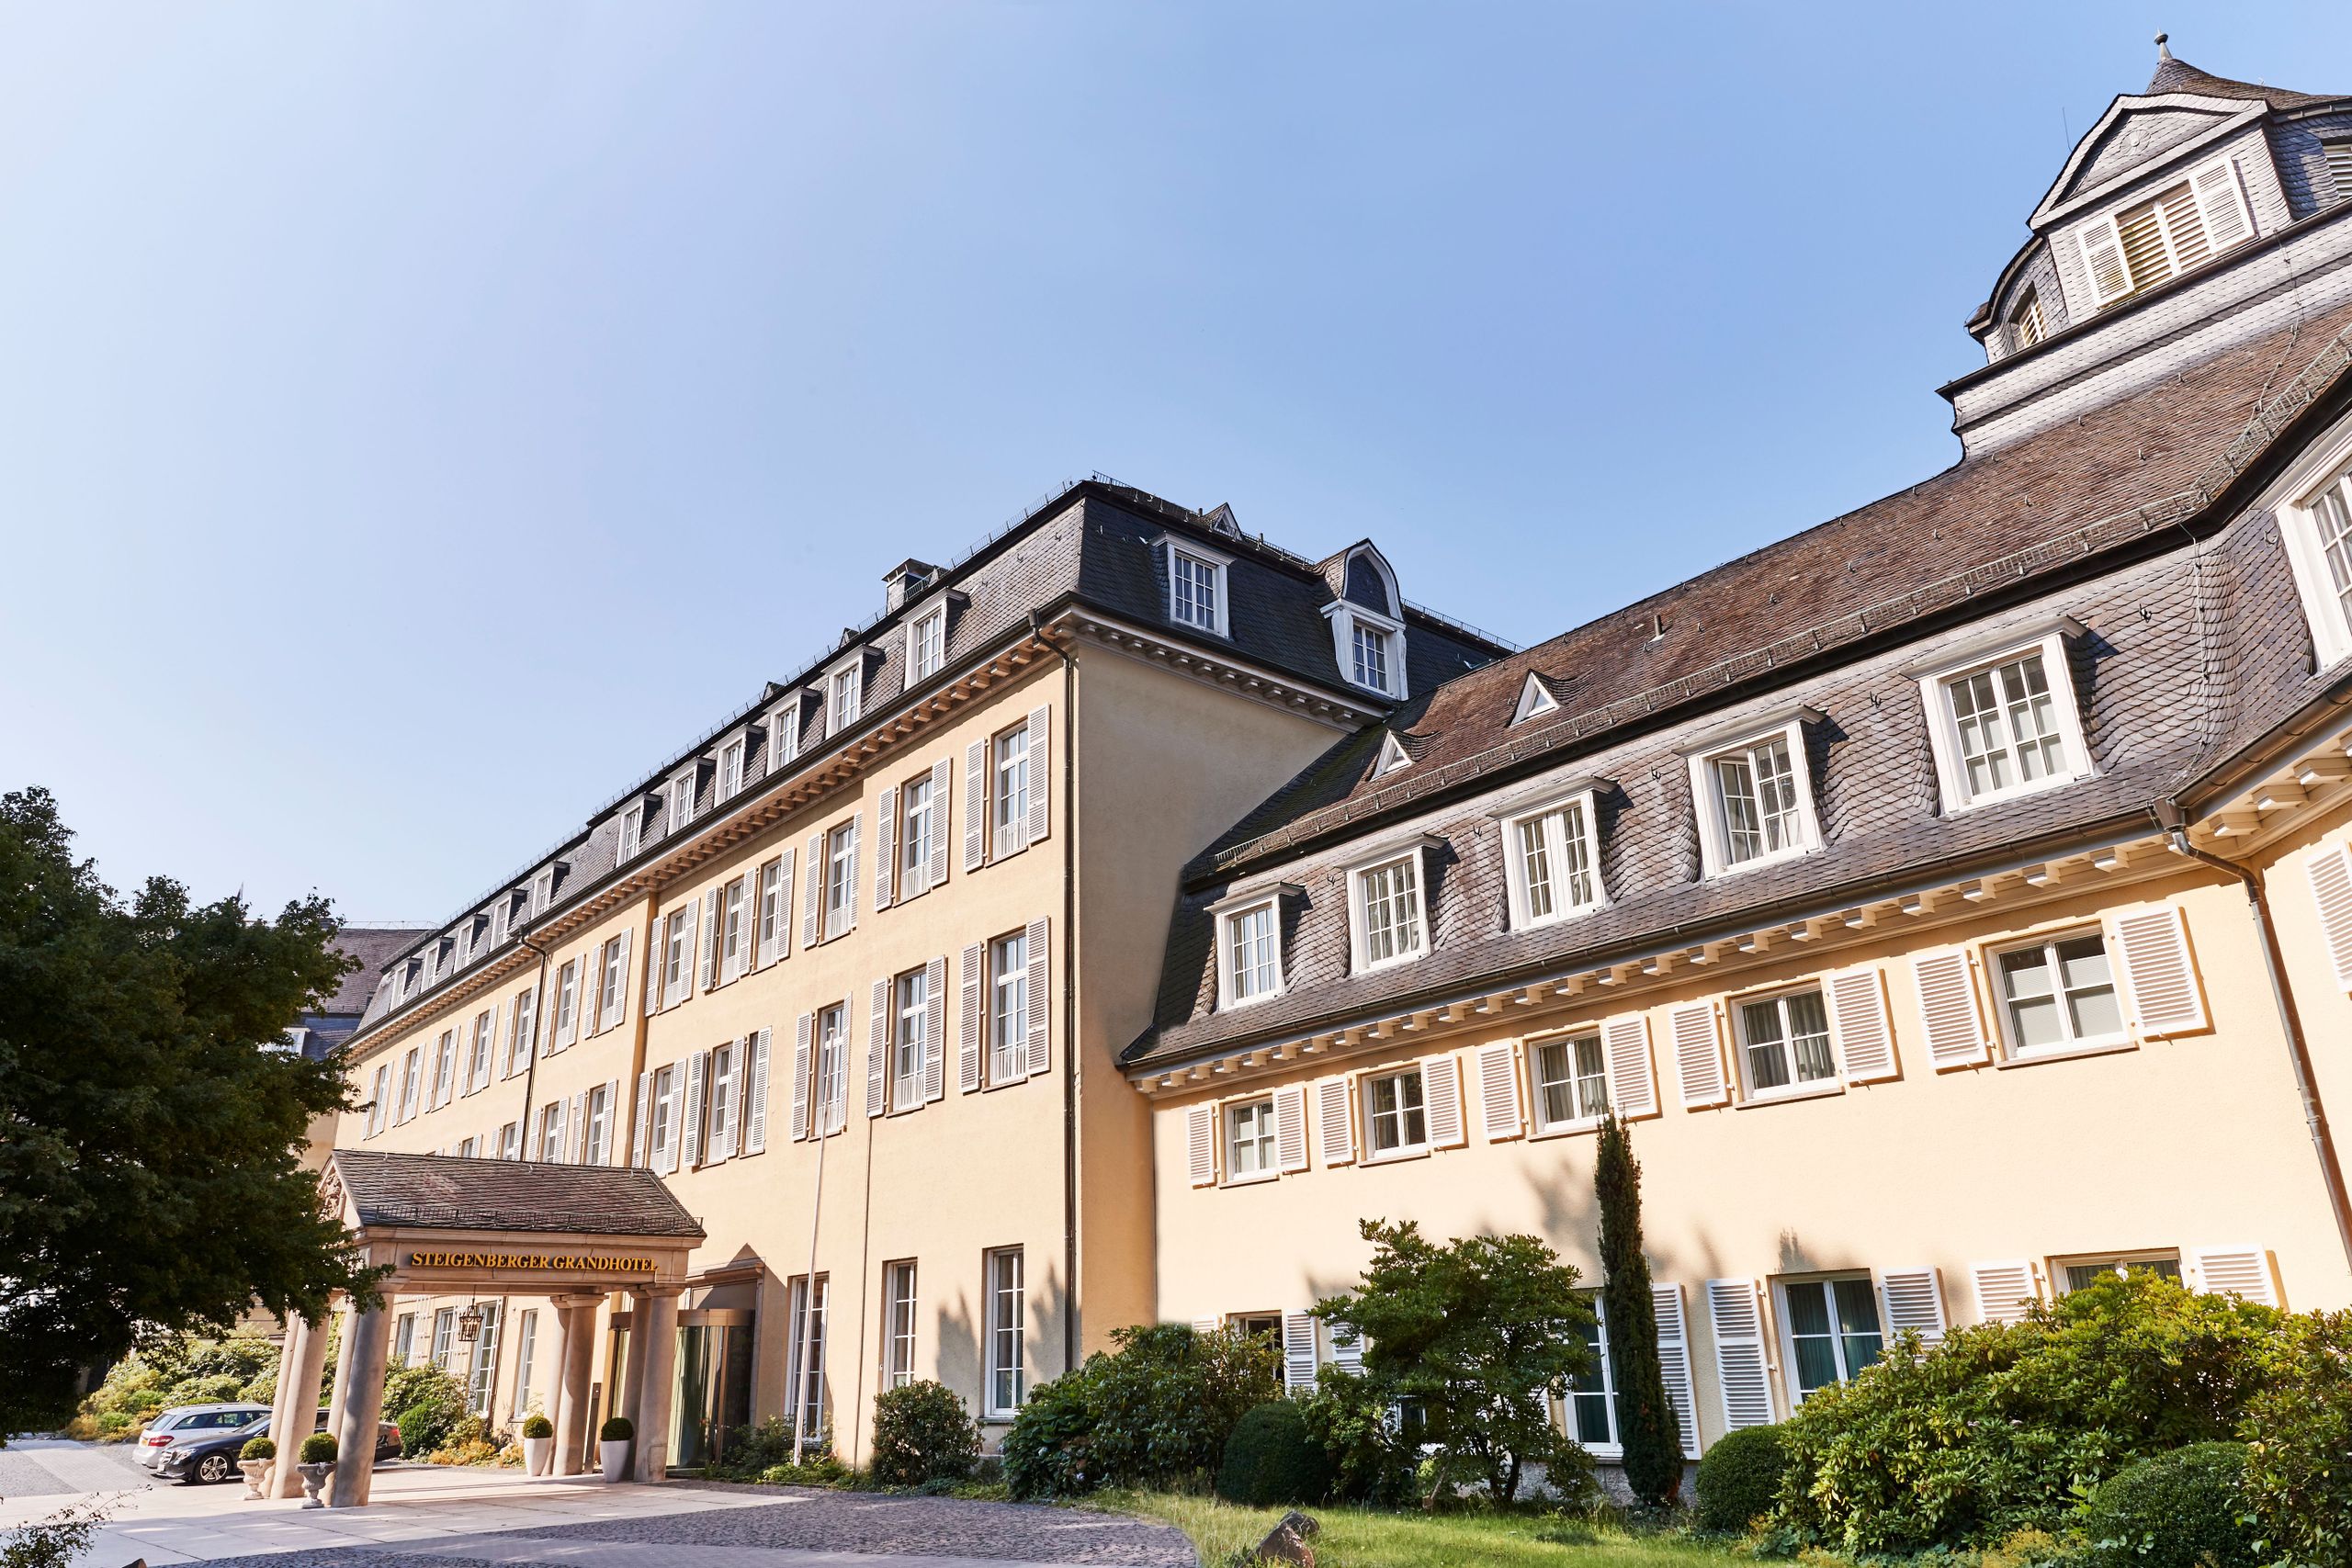 Steigenberger Grandhotel & Spa Petersberg, Königswinter/Bonn,exterior view